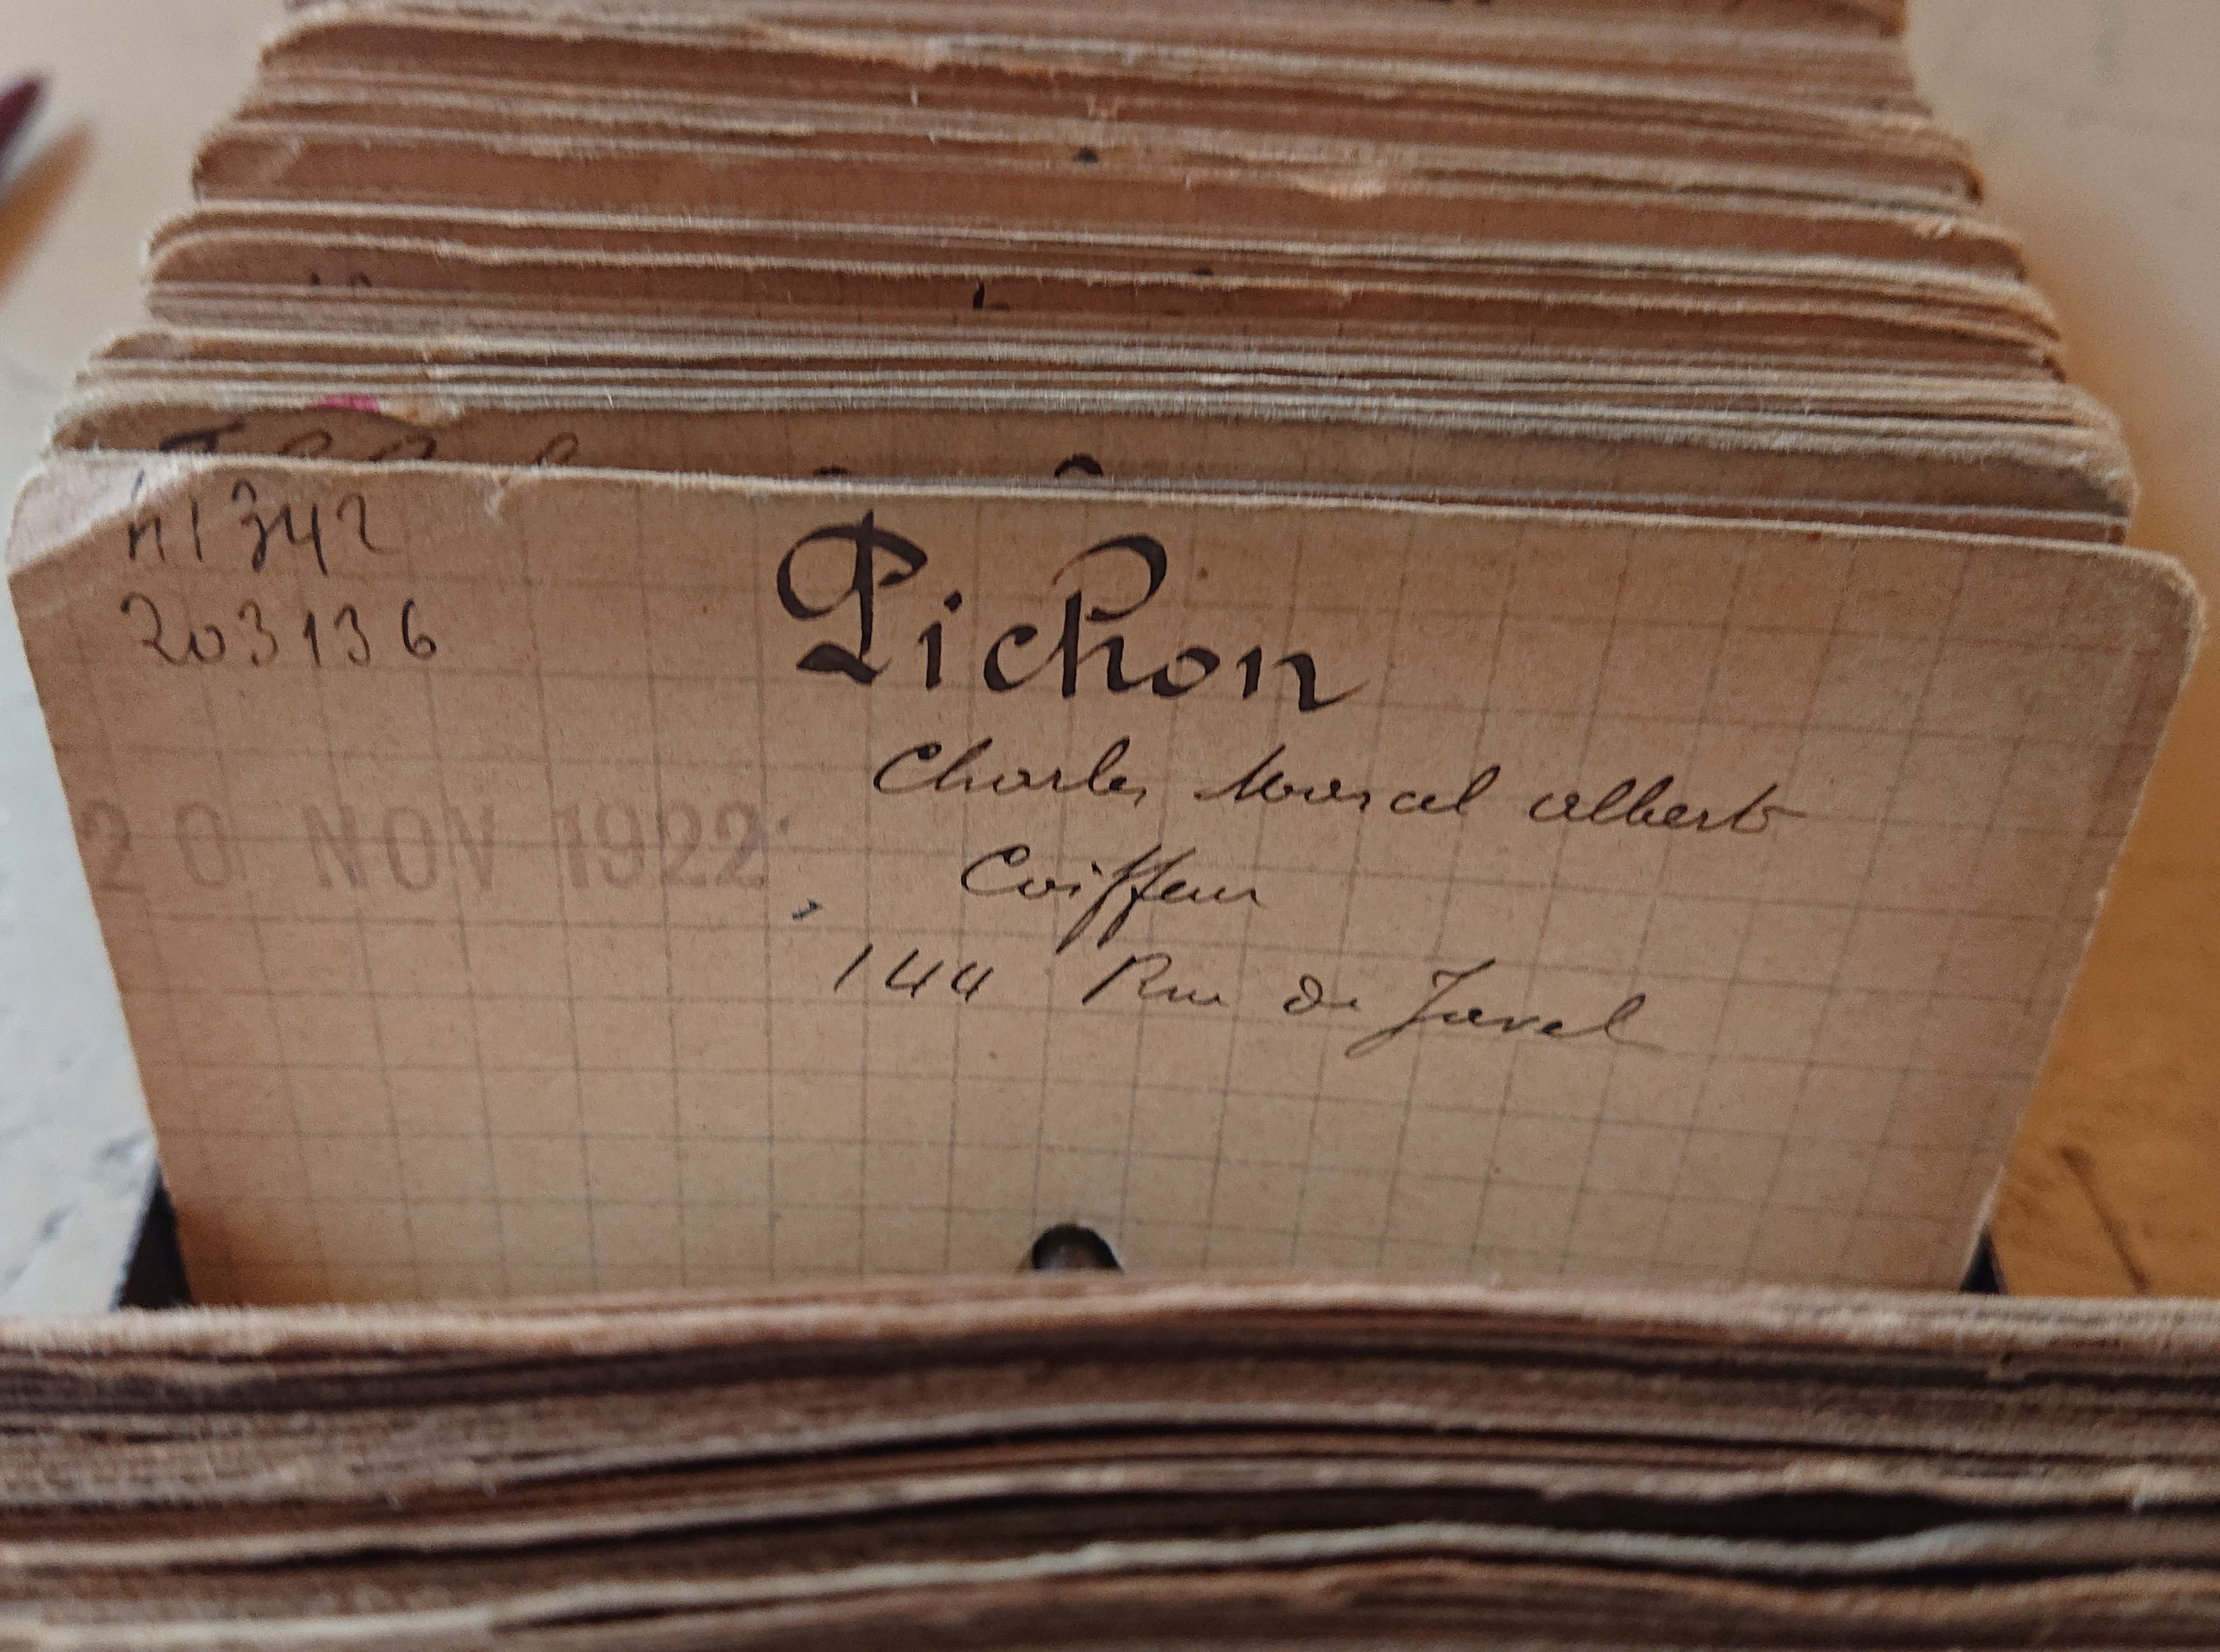 Le registre du commerce de la ville de Paris indique que Charles Pichon ouvrit son salon de coiffure au 144 rue de Javel, Paris 15e, le 20 novembre 1922.<br><br>